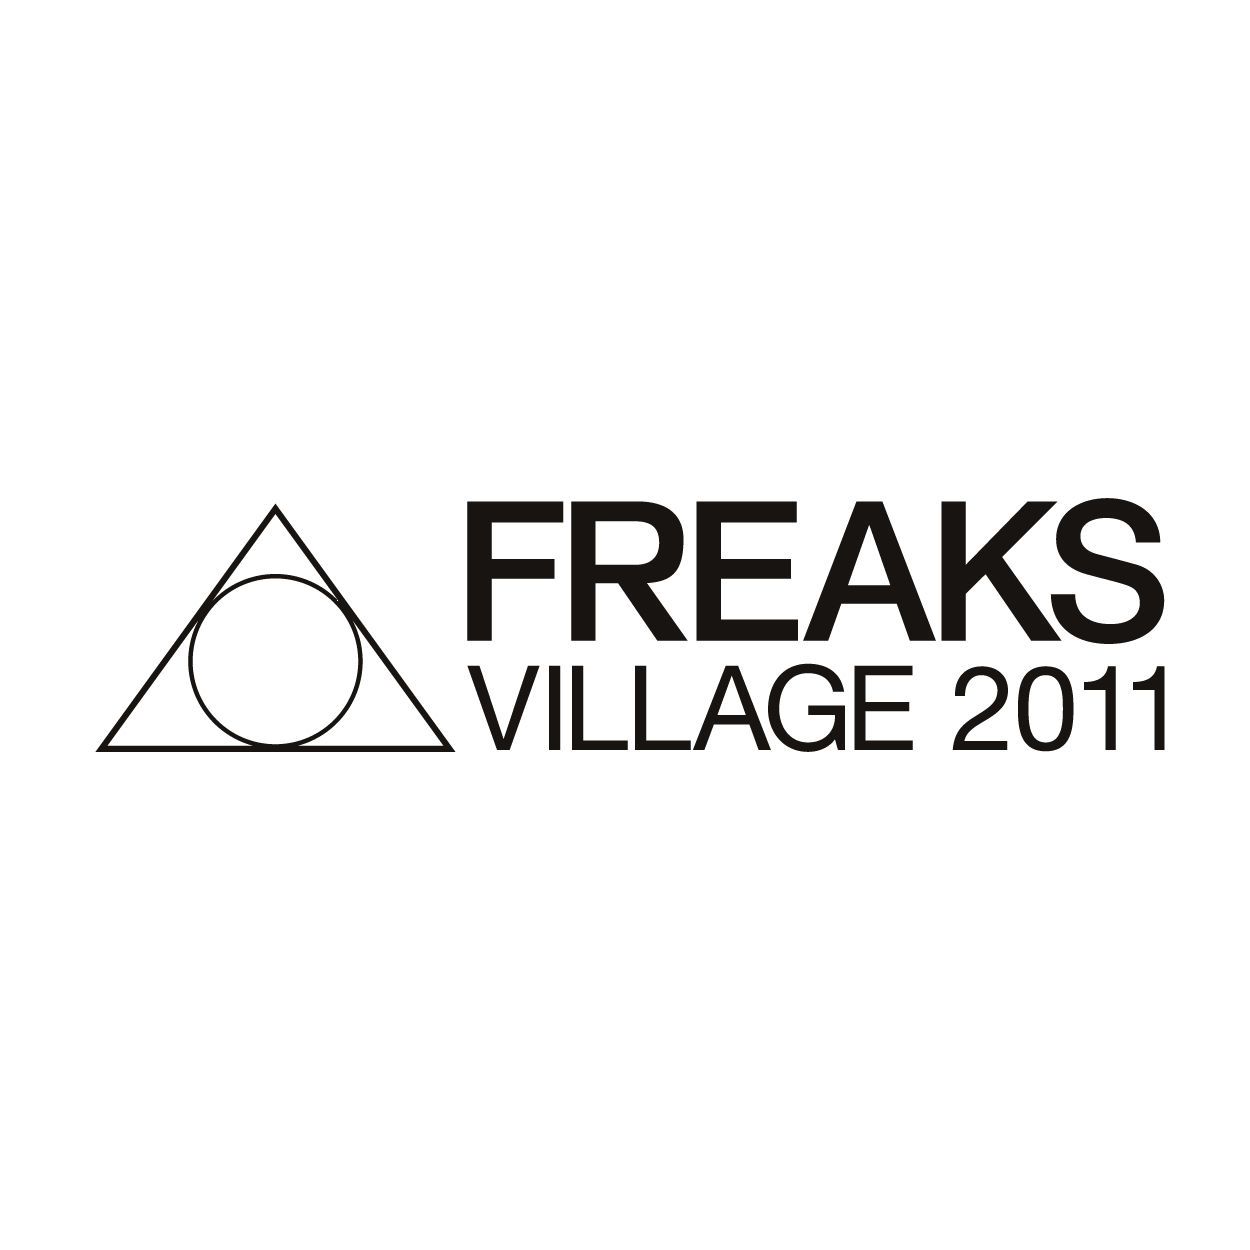 野外フェス「FREAKS VILLAGE 2011」今秋に開催決定&第1弾ラインナップ発表